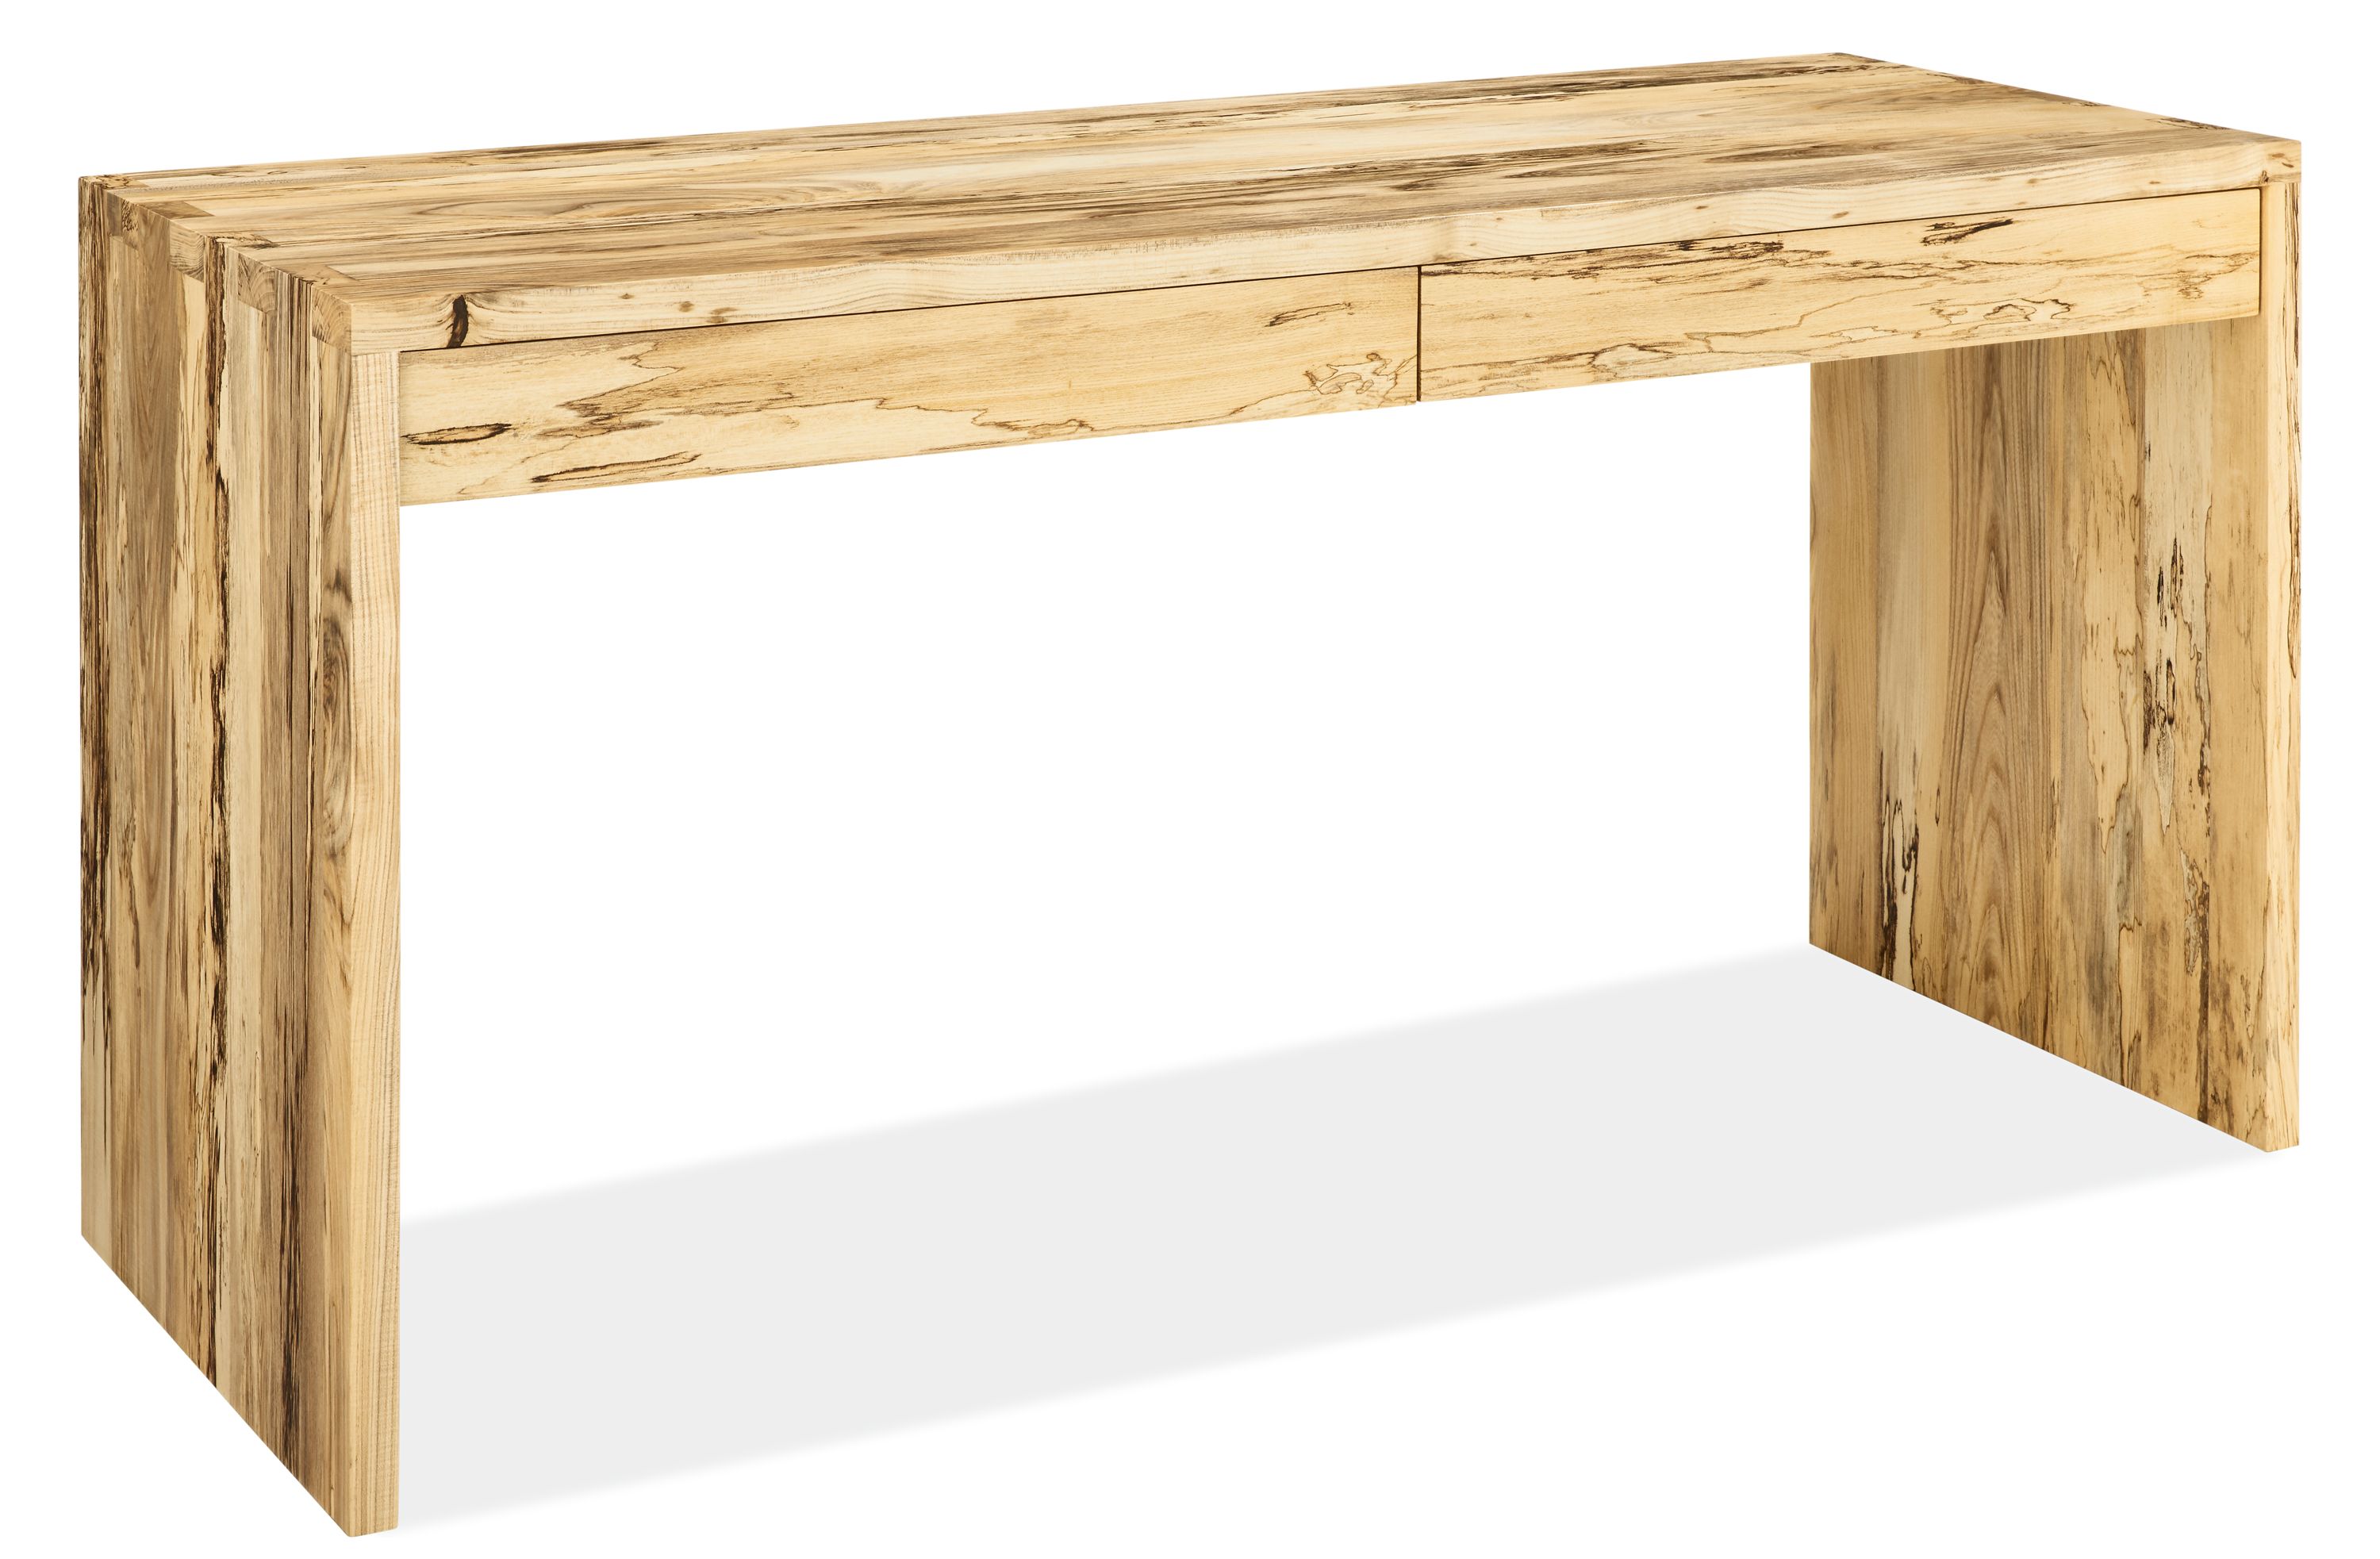 Rowan Desks - Modern Office Furniture - Room & Board